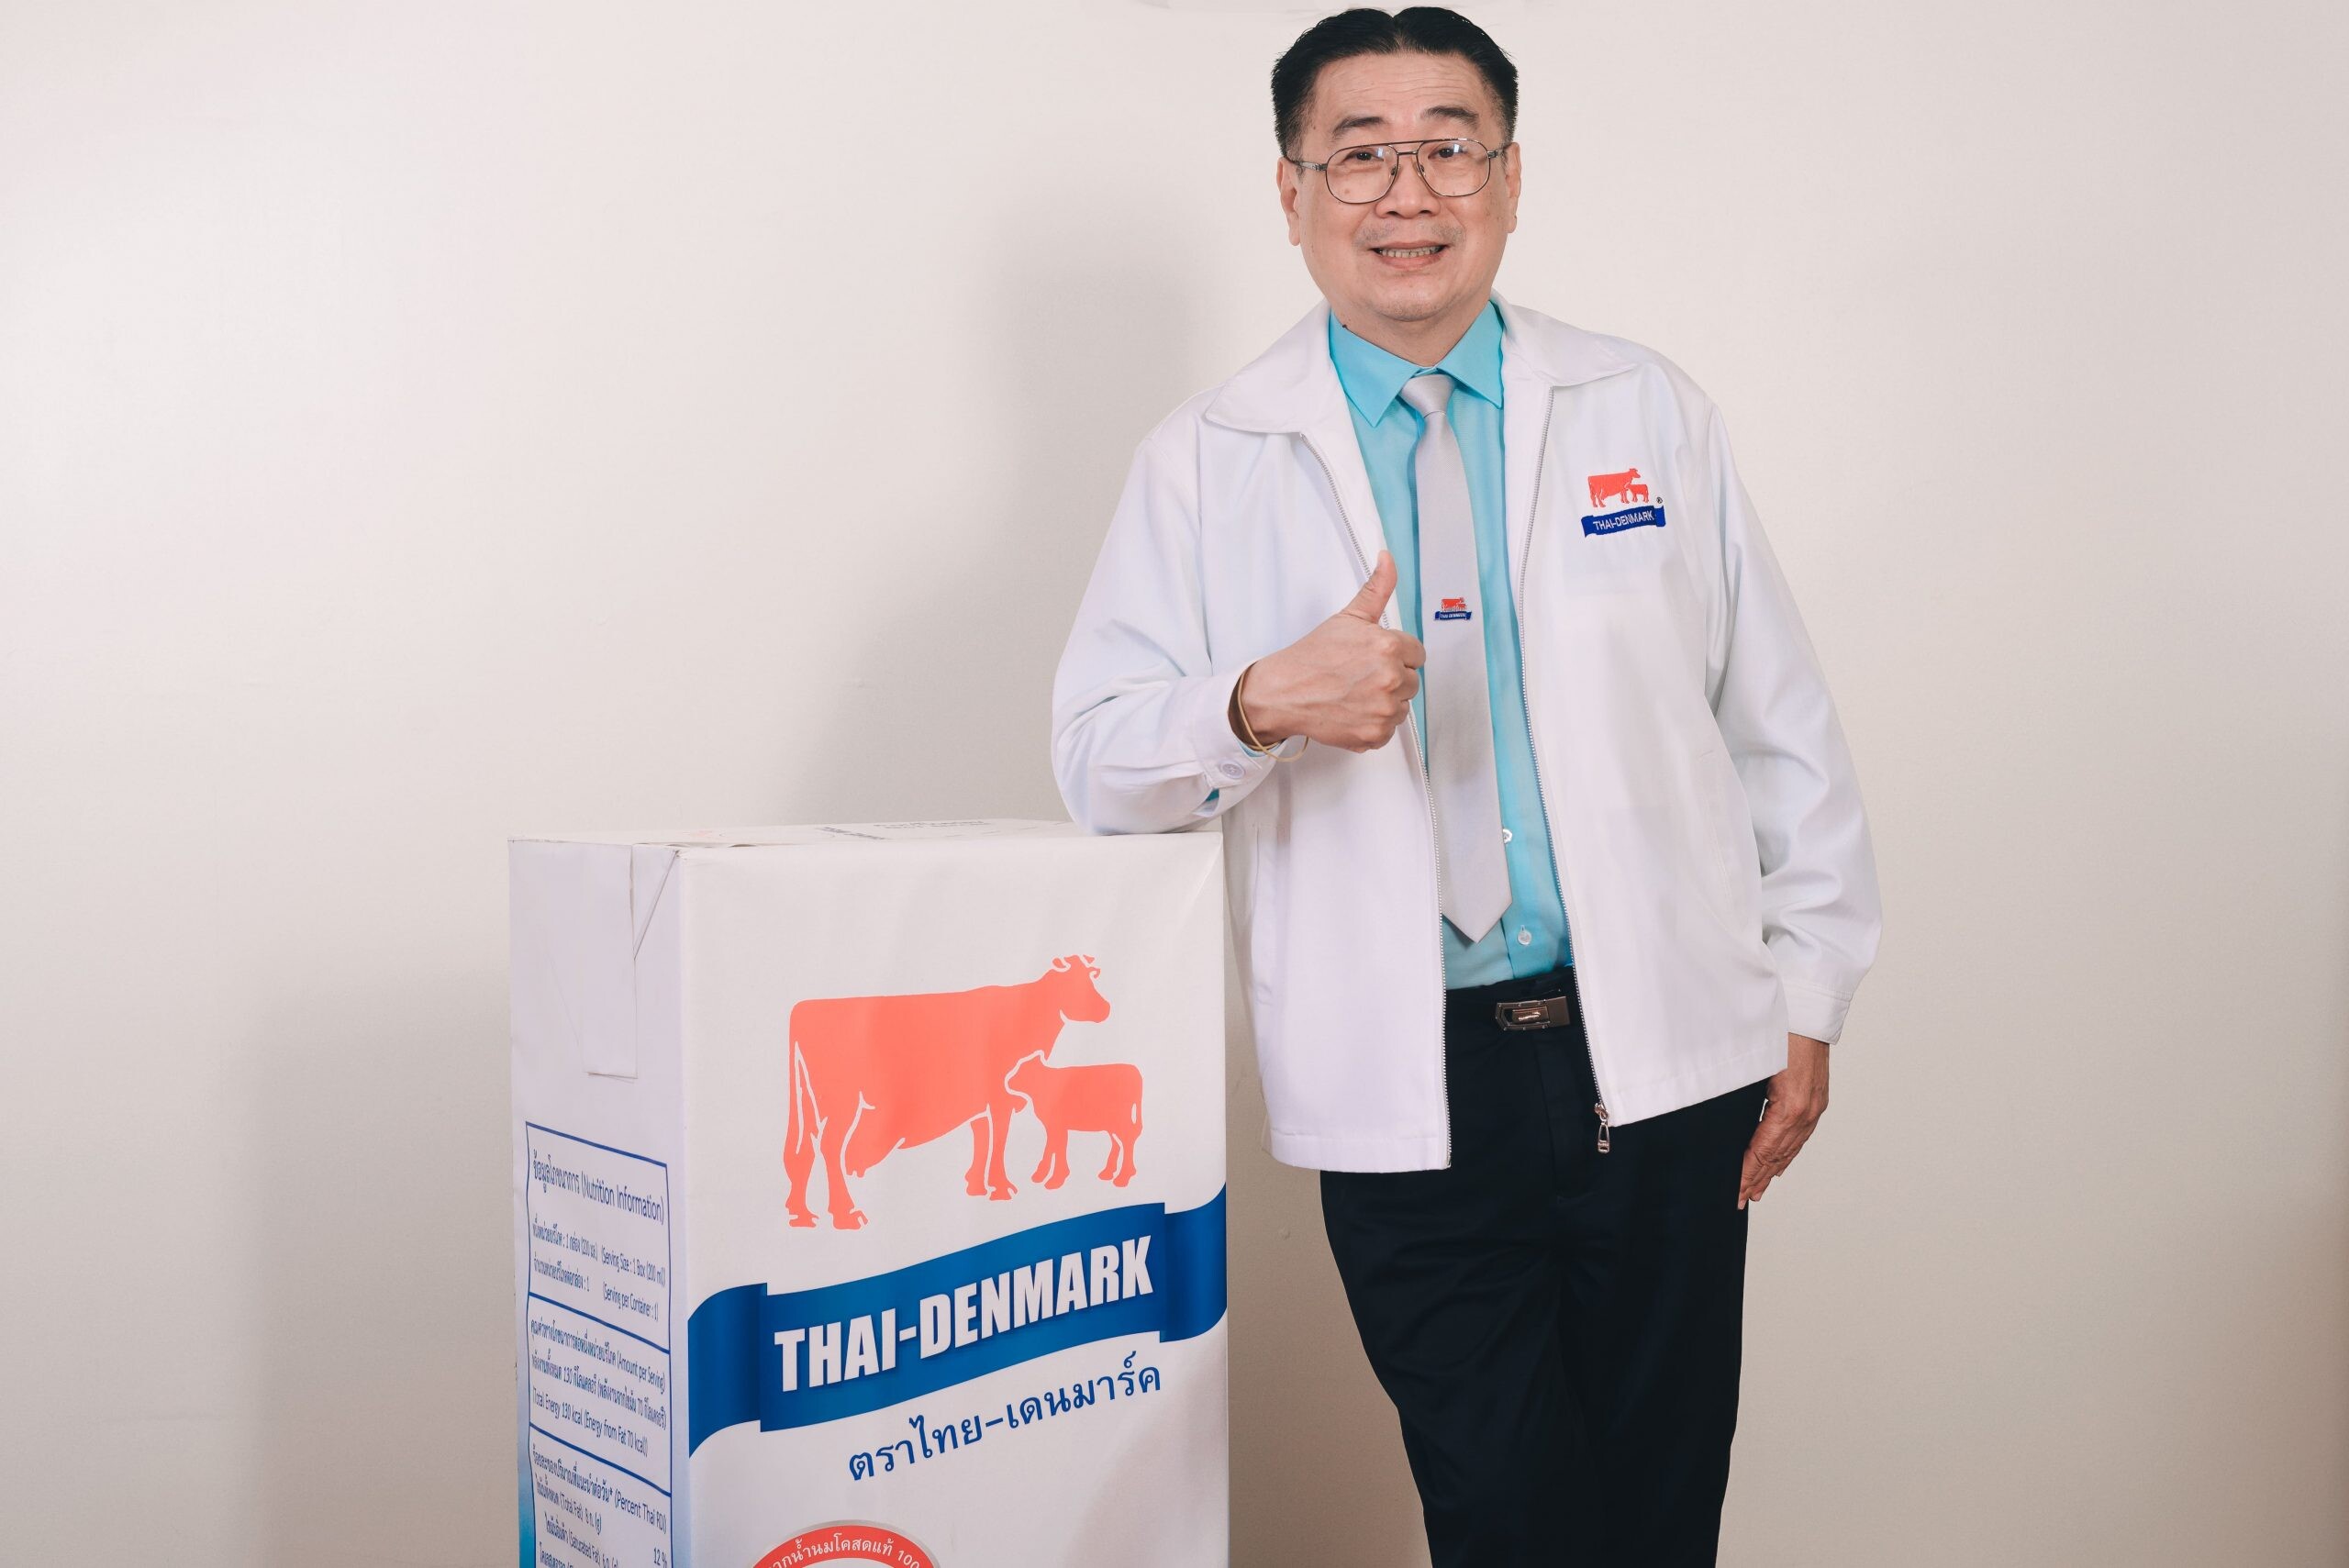 “นมไทย-เดนมาร์ค”รุกหนักตลาดออนไลน์รับ “นิว นอร์มอล” พร้อมชูจุดขายใช้วัตถุดิบจากนมโคสด 100% ไม่ผสมนมผง